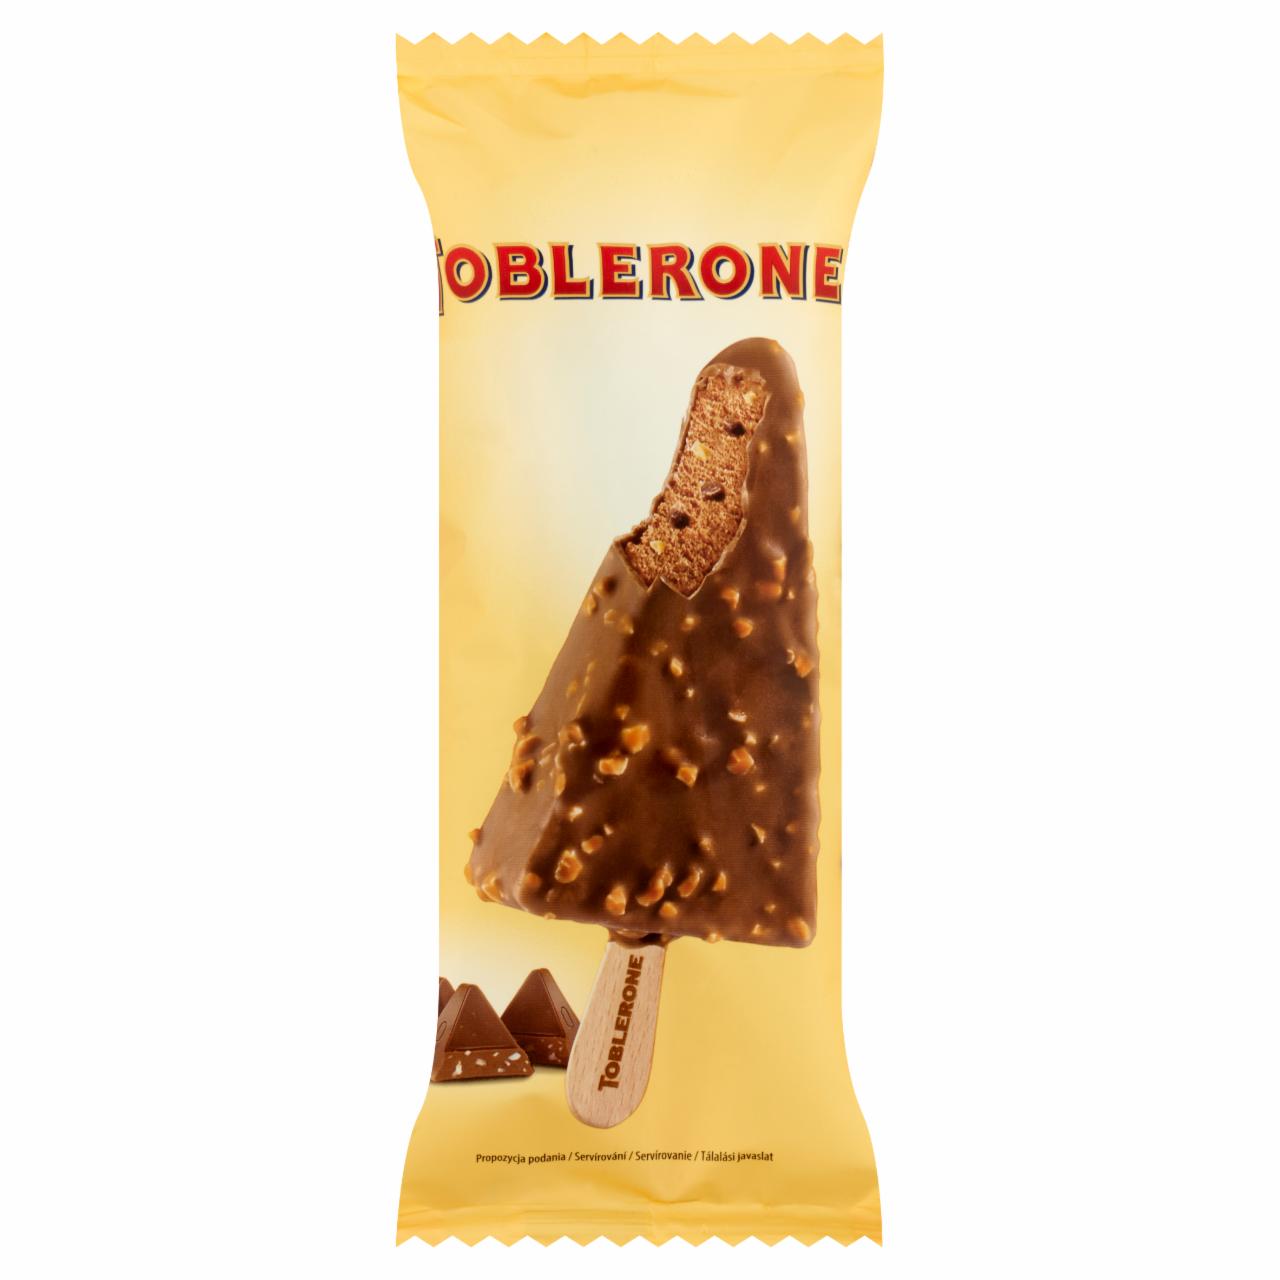 Képek - Toblerone csokoládés-mézes jégkrém mézes-mandulanugátos tejcsokoládé darabokkal 100 ml